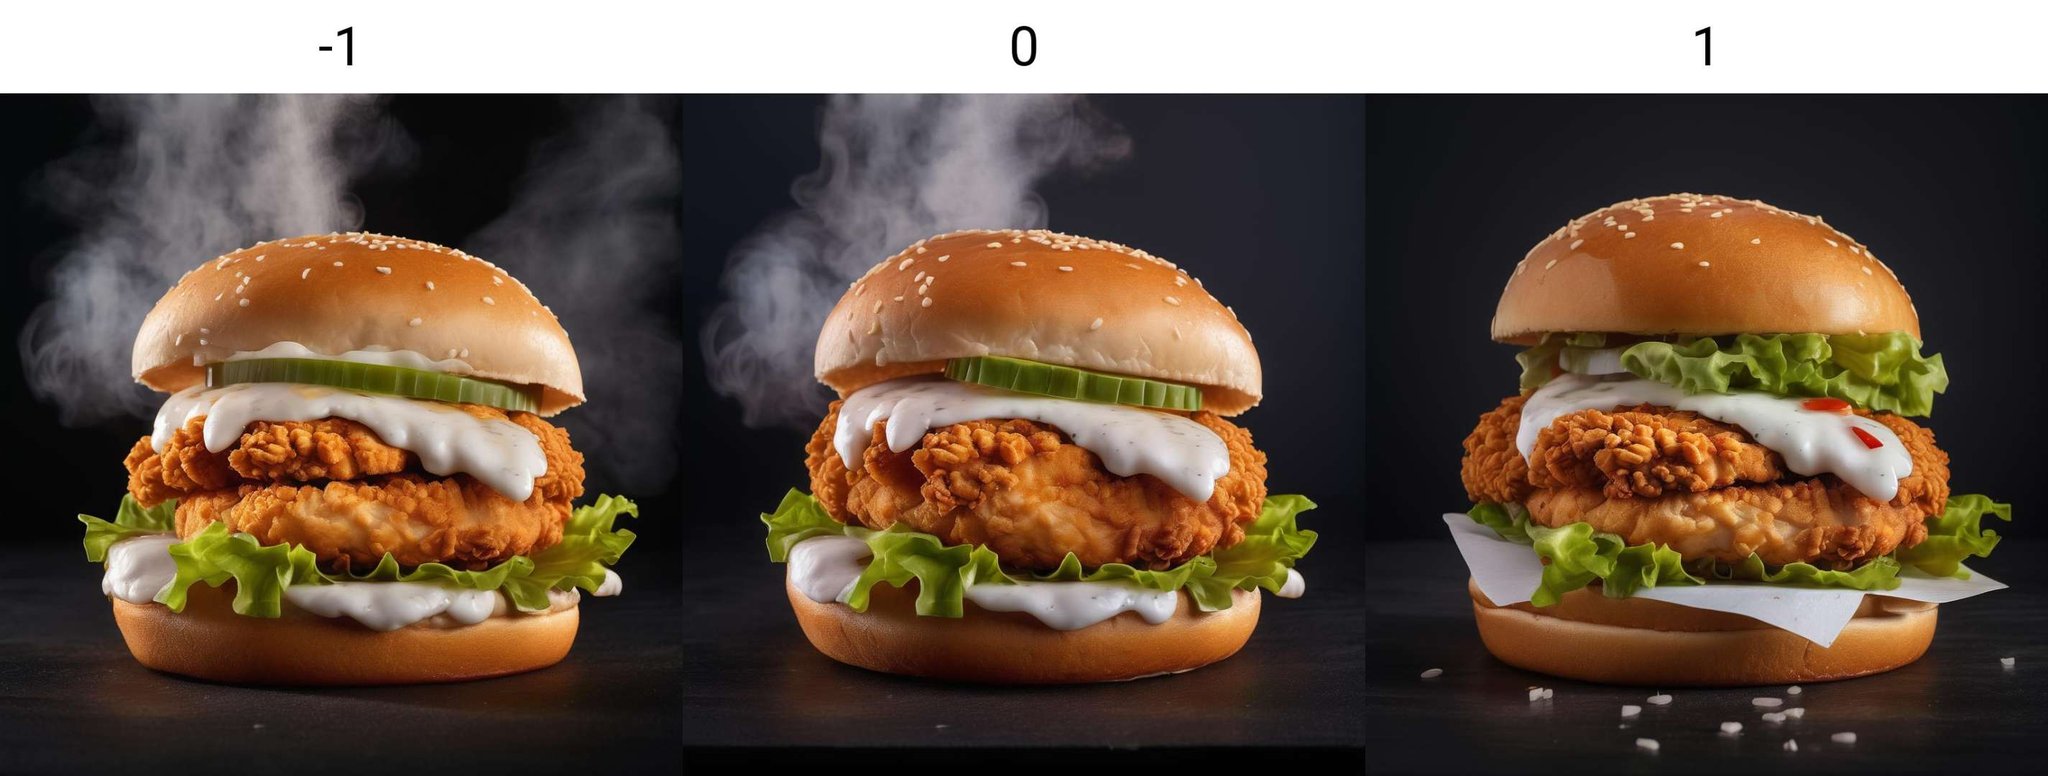 kfc chicken burger, dark background, quality photo, fried chicken, studio photo, steaming<lora:neg4all_bdsqlsz_xl_V6:-1>, 